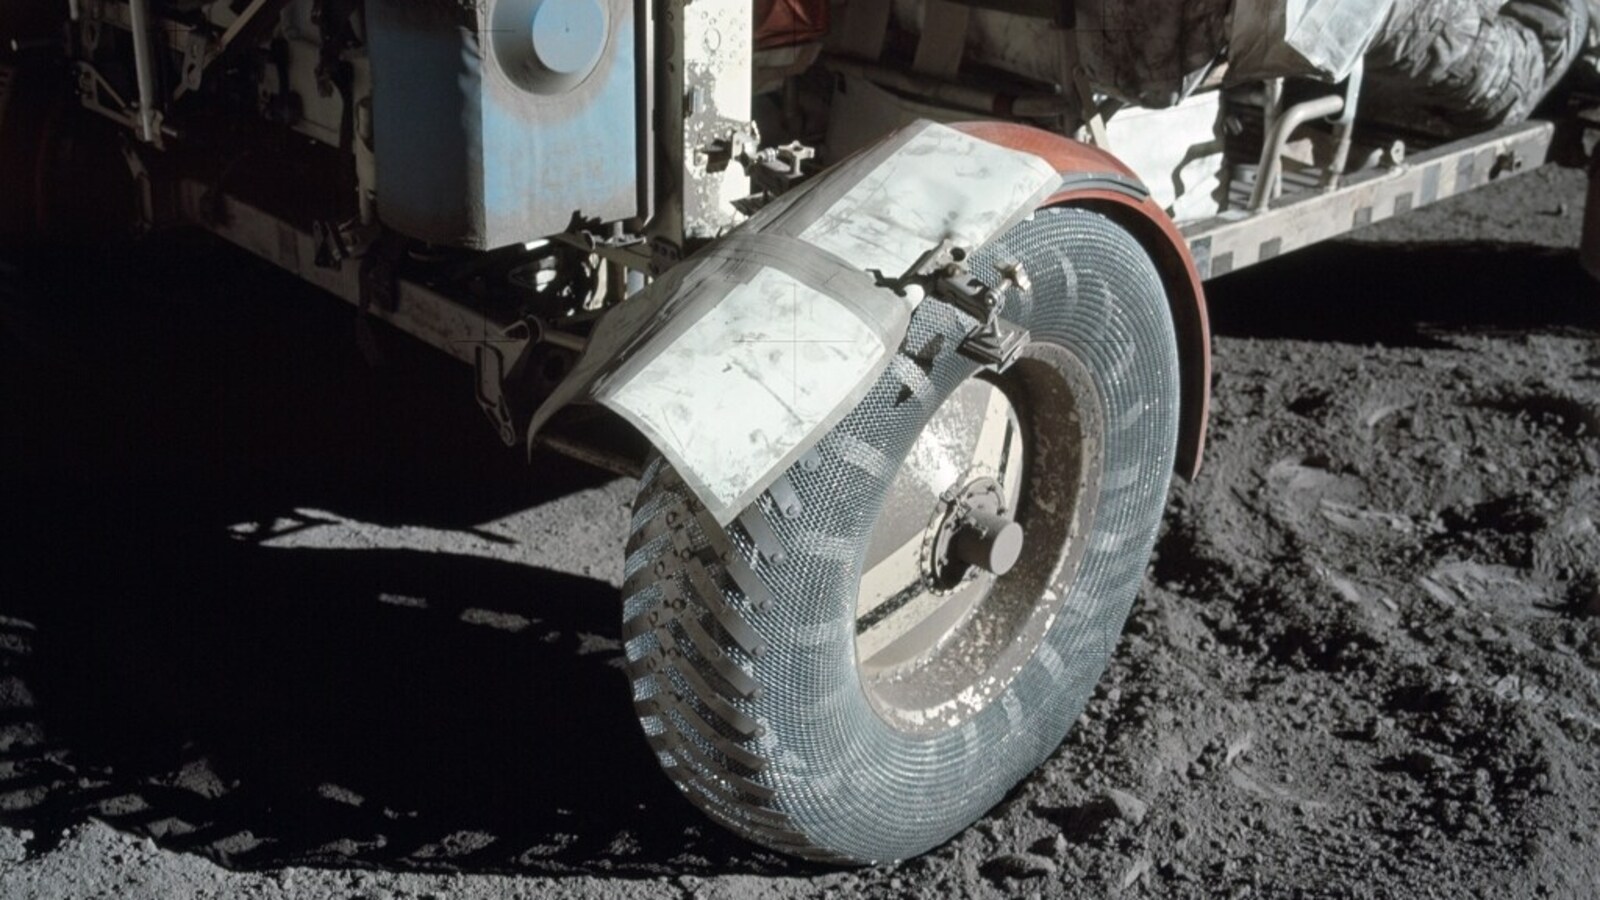 NASA Astronomy Picture of the Day 14 décembre 2022 : Rover fixé par « TAPE » sur la Lune